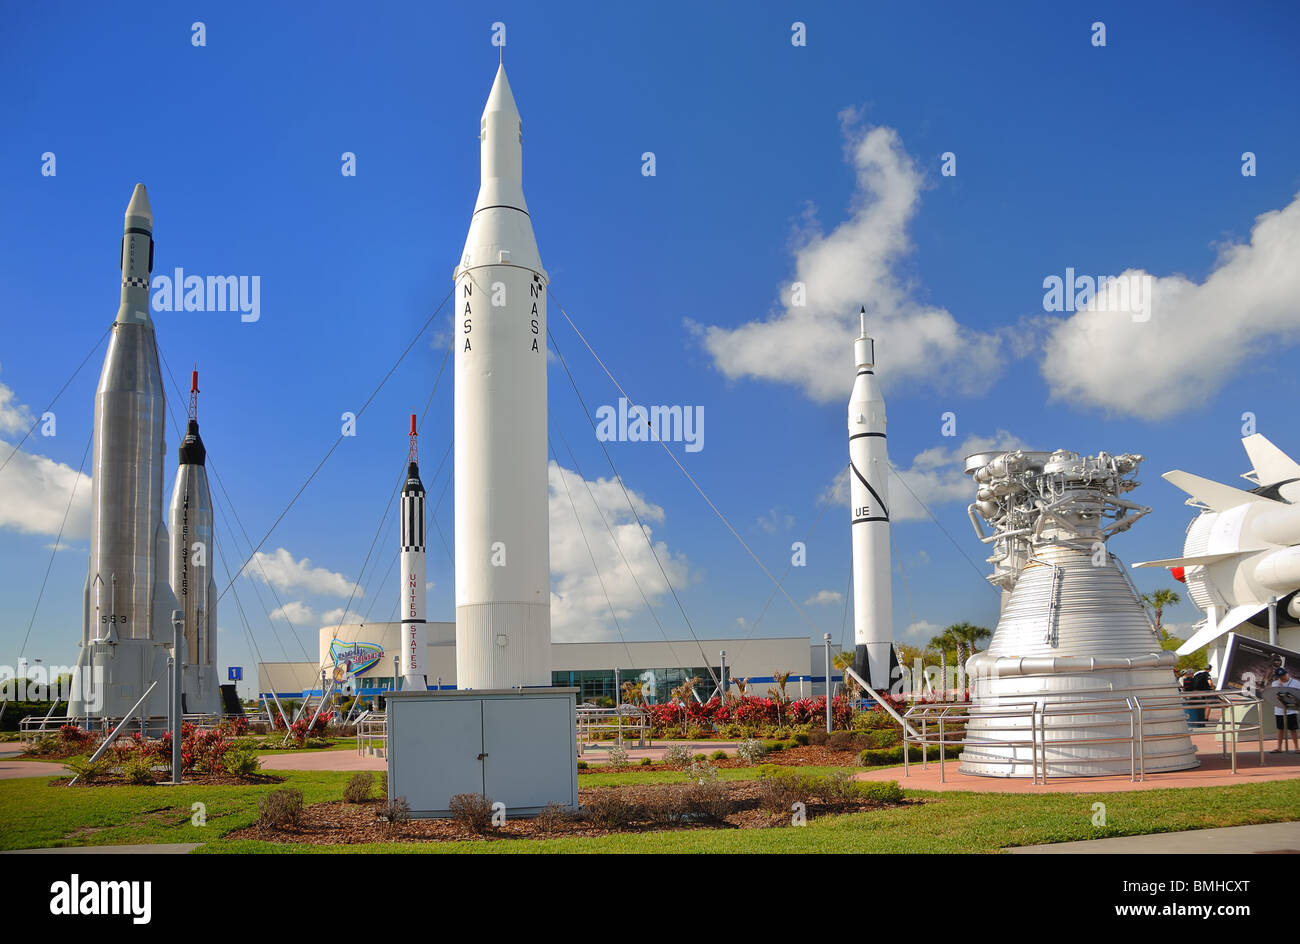 El jardín de cohetes en el Centro Espacial Kennedy, de Cabo Cañaveral, Florida, EE.UU., ha sido recientemente rehabilitado. Foto de stock